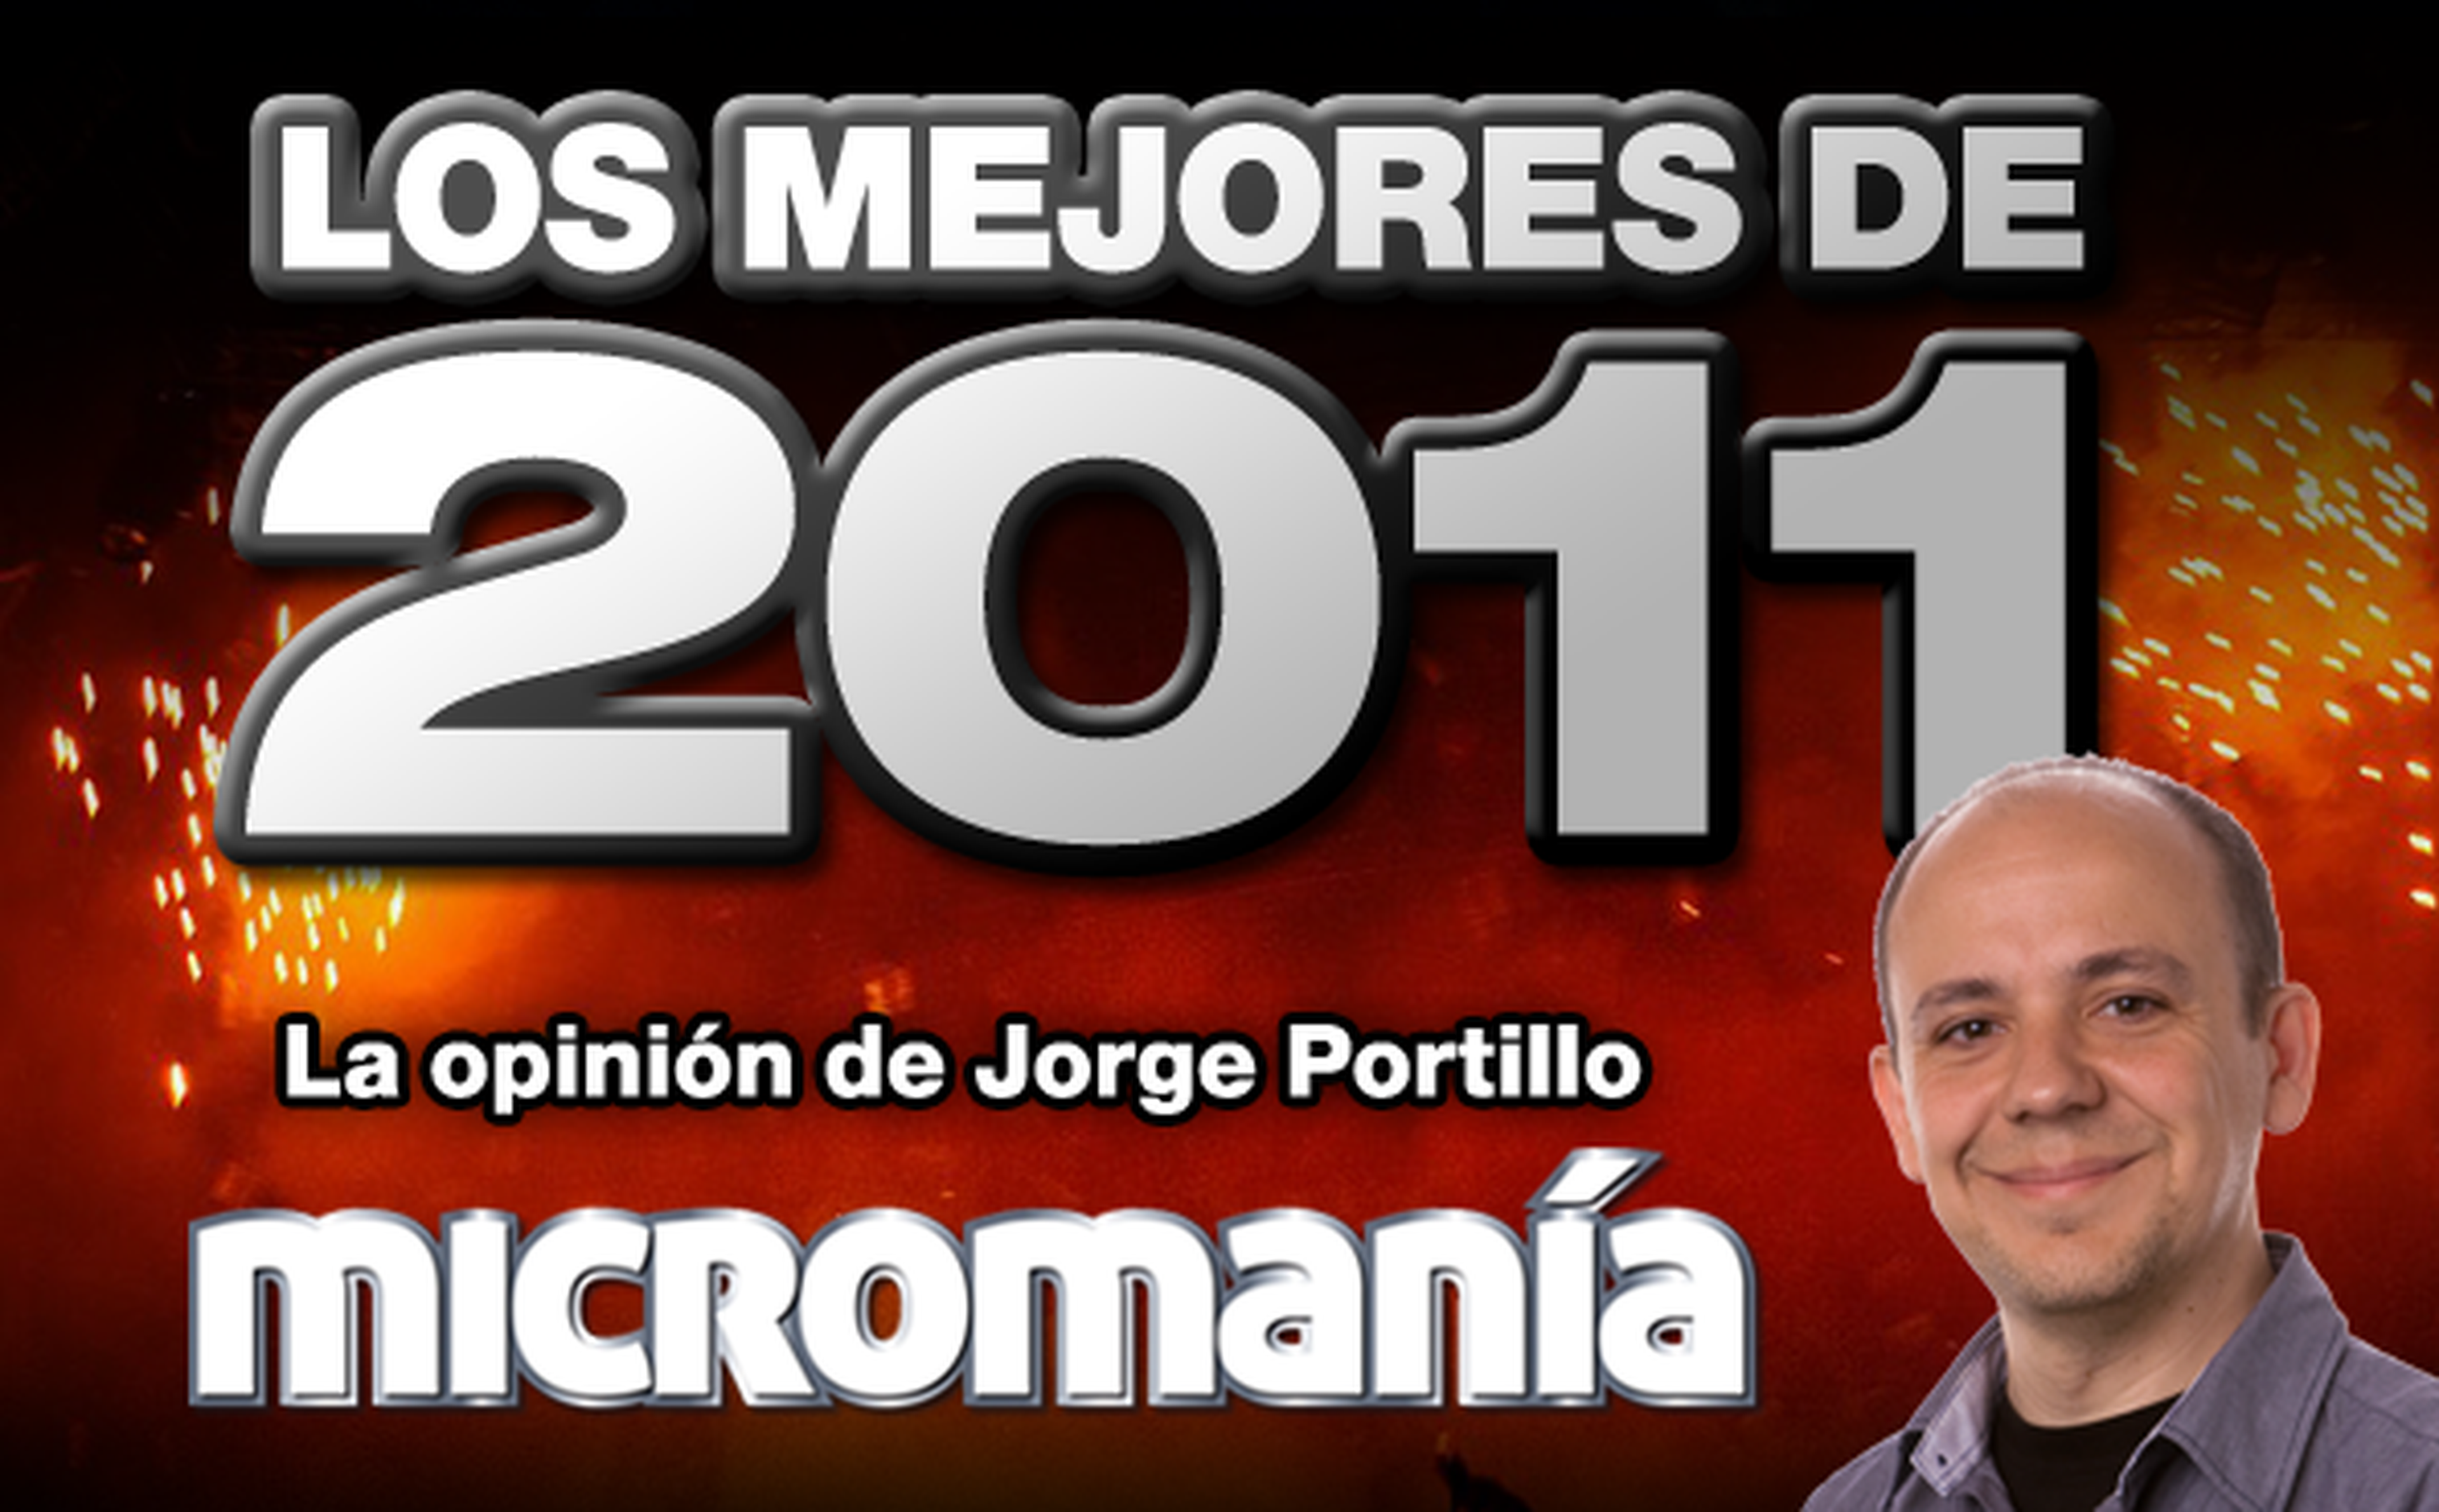 Los mejores de 2011: Jorge Portillo